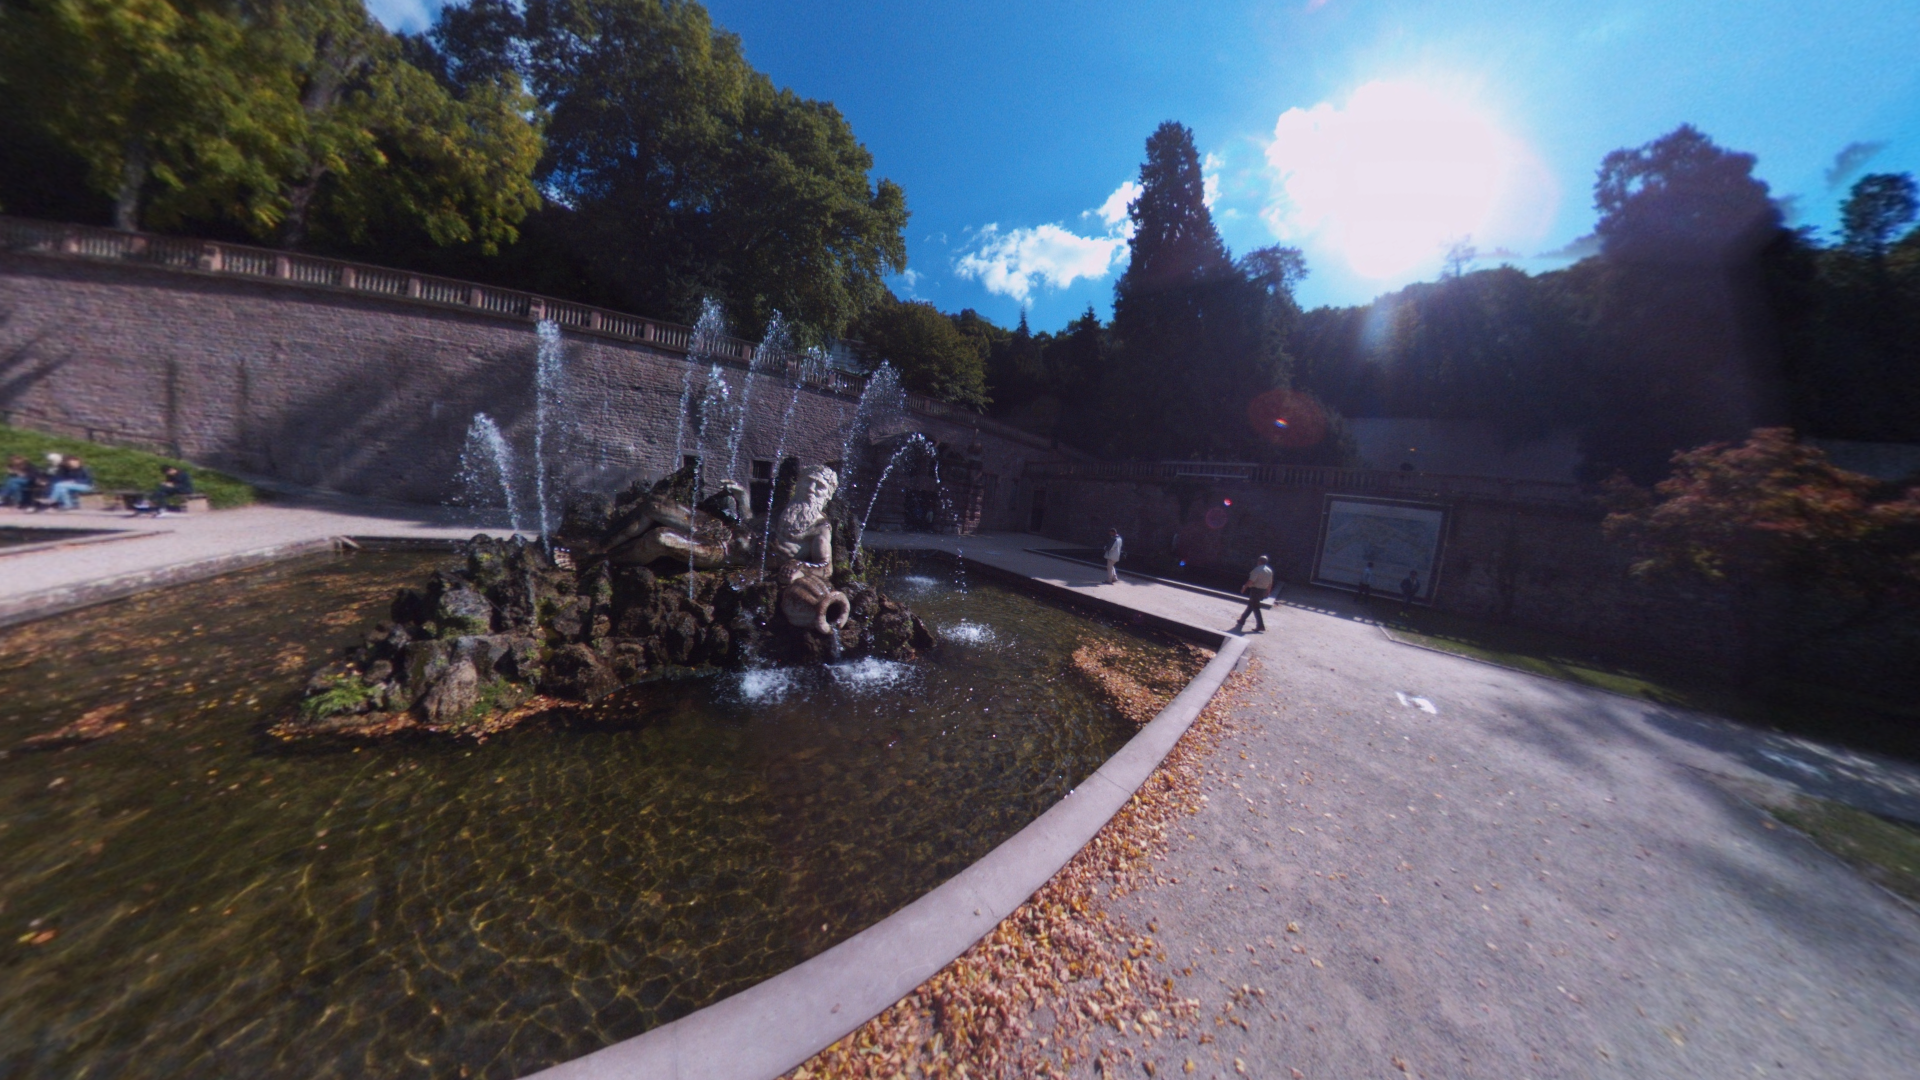 Fotos 360 Fuente mitológica del jardín del castillo de #Heidelberg. #VidePan por #Frankfurt